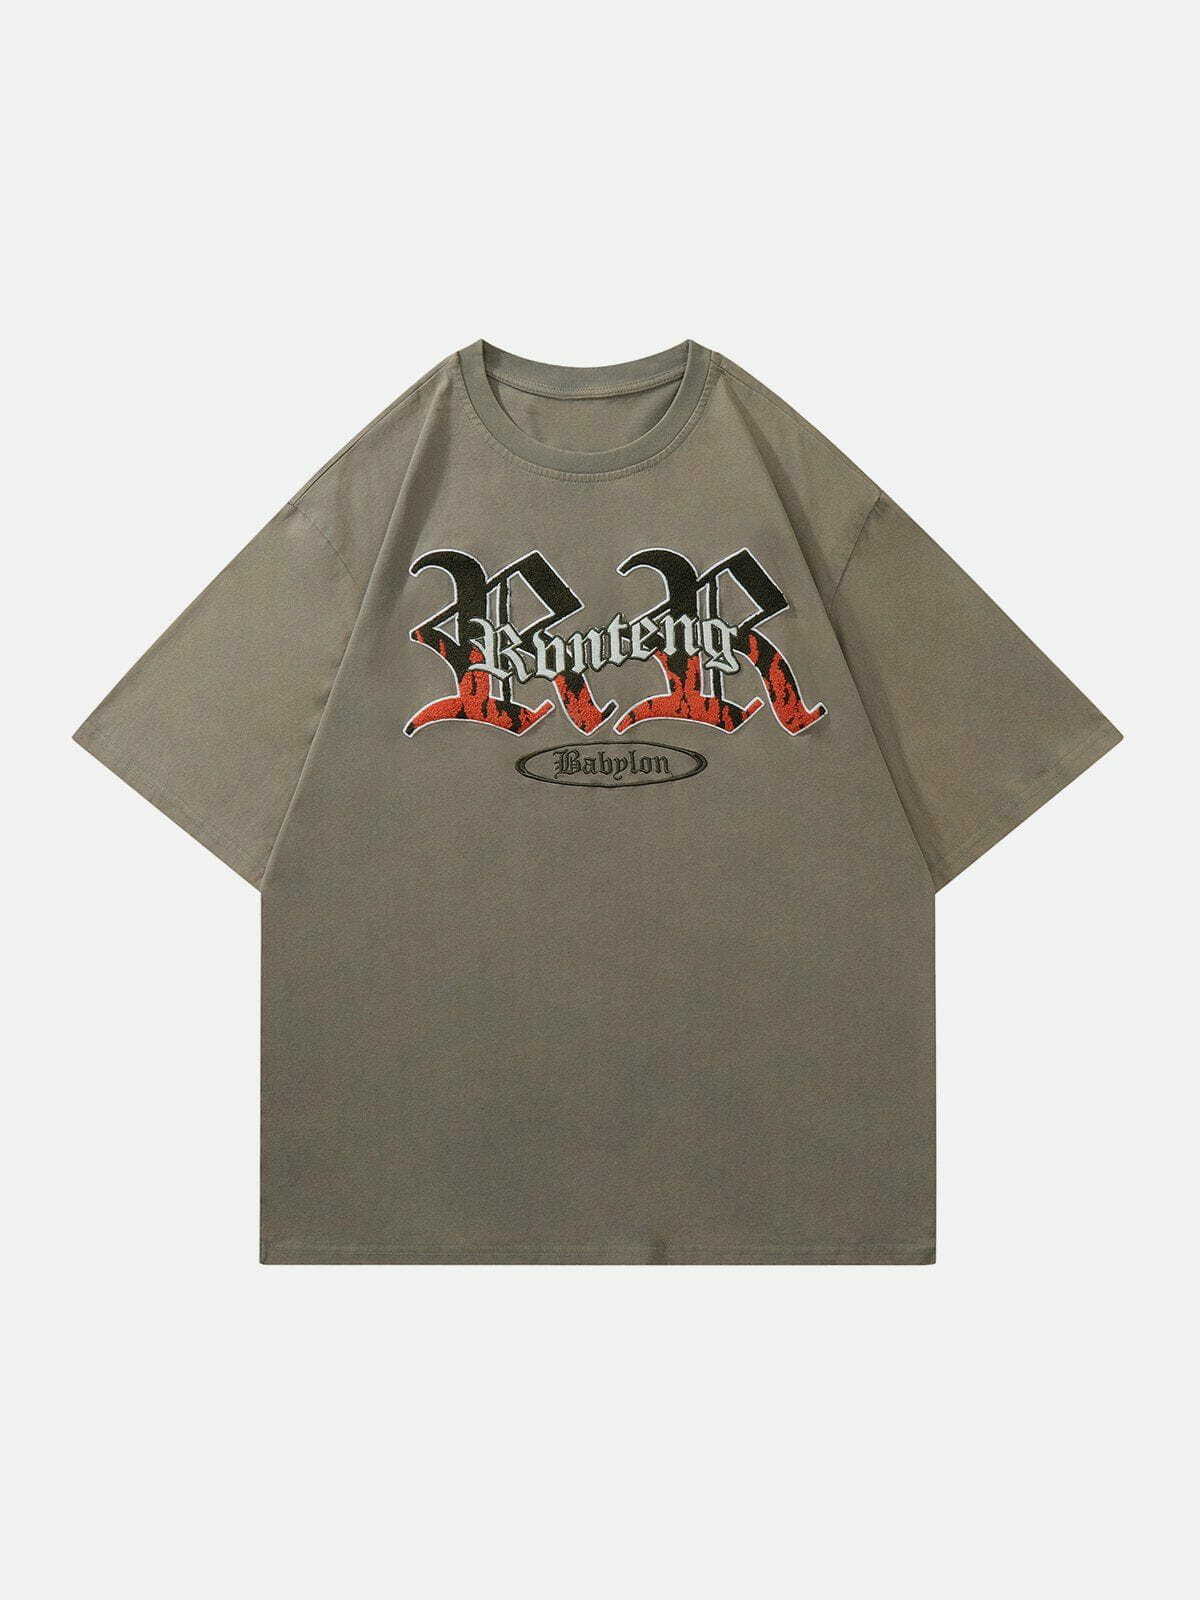 revolutionary flame print tshirt edgy streetwear essential 5979